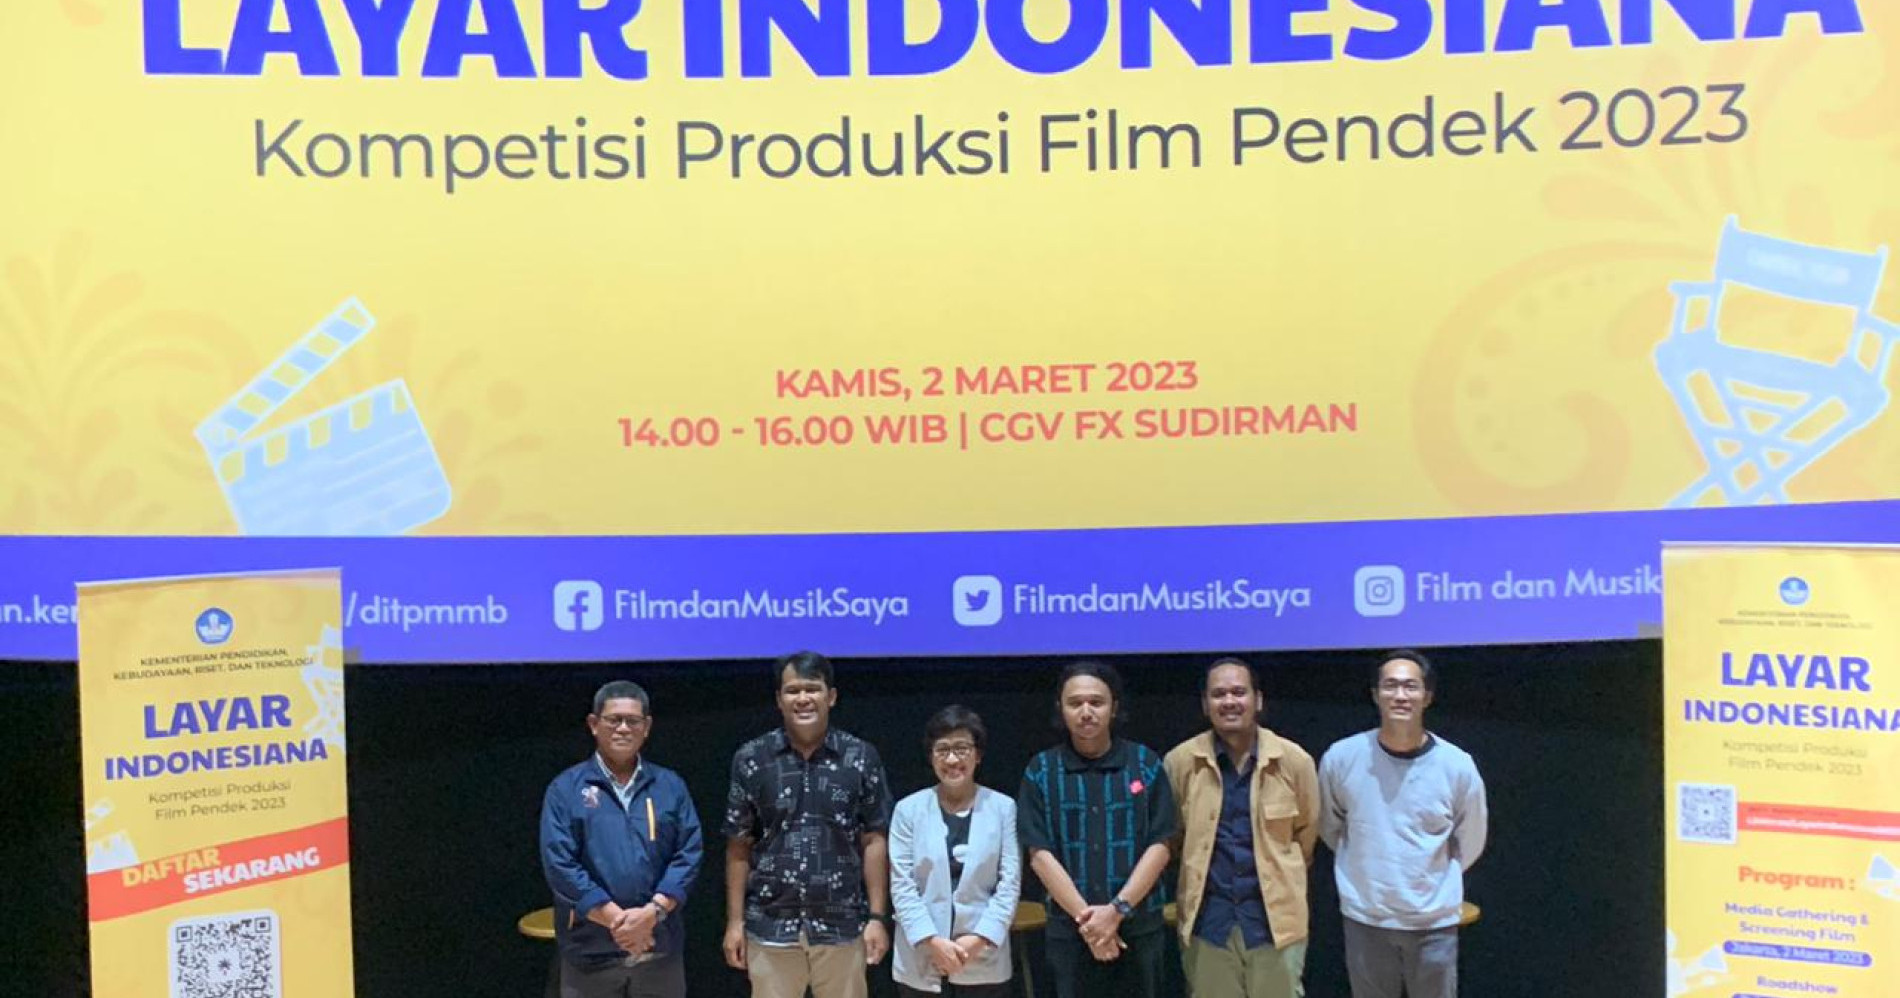 Acara konferensi pers Kompetisi Produksi Film Pendek "Layar Indonesiana" 2023 di CGV FX Sudirman, Jakarta, Kamis (2/3/2023)-Sumber gambar: Hypeabis.id/Luke Andaresta